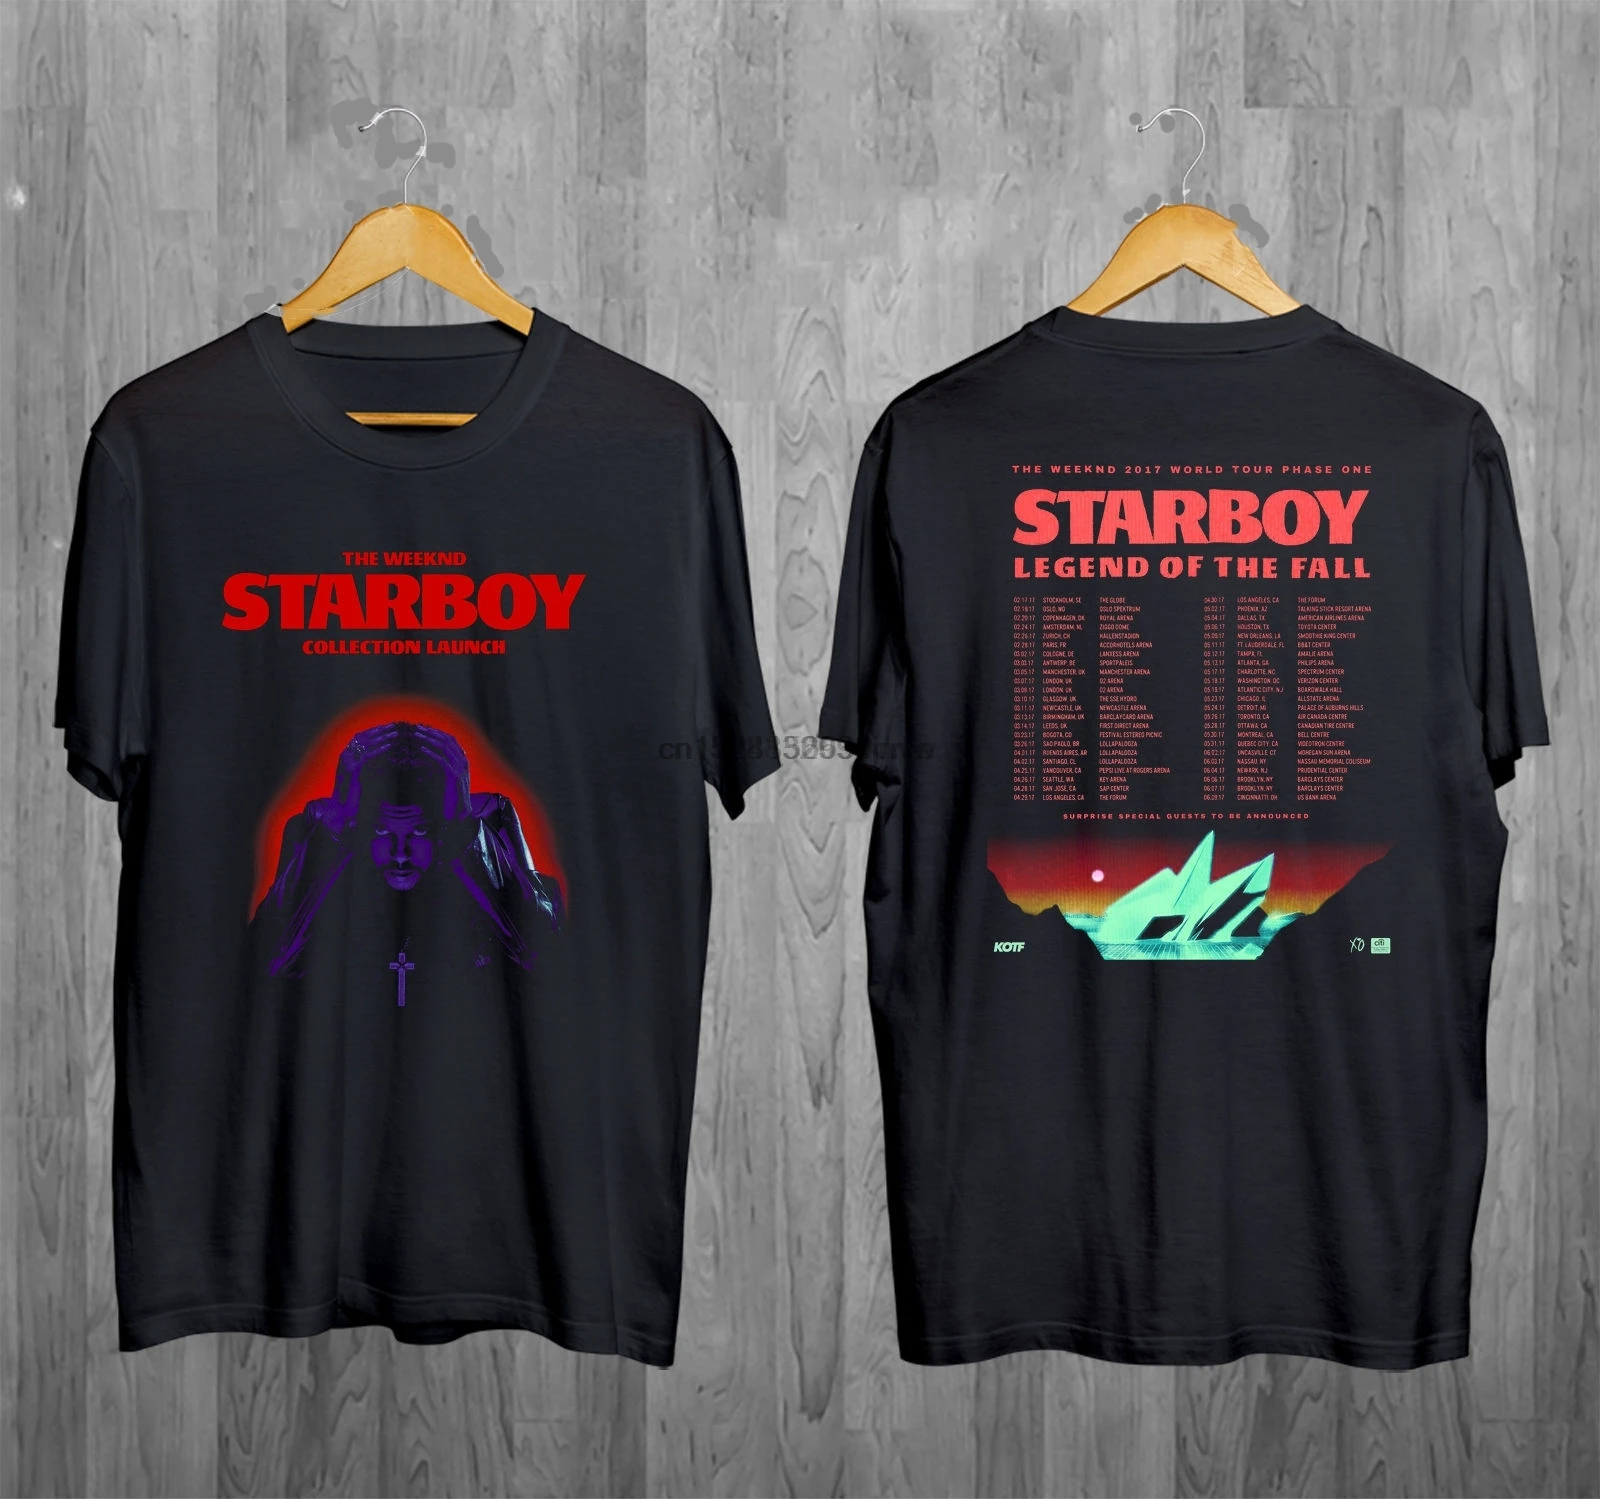 Correspondent schandaal Wirwar The Weeknd T shirt Starboy Legend Of The Fall Tour 2017 Dates Tour T Shirt  S 2XL|T-Shirts| - AliExpress